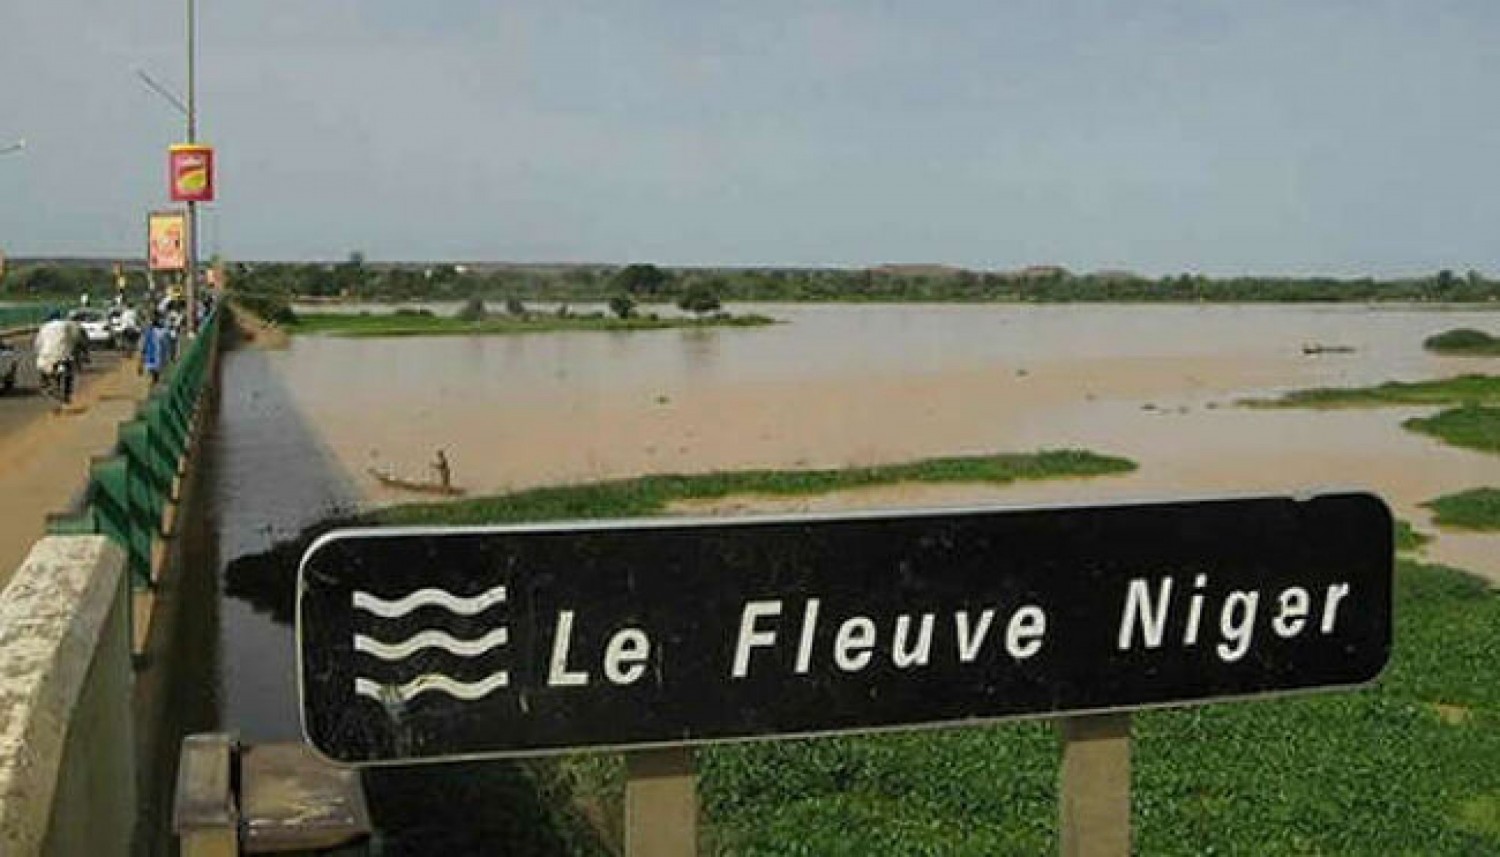 Bénin-Niger : Tensions croissantes avec Niamey, le Bénin verrouille le fleuve Niger de son côté